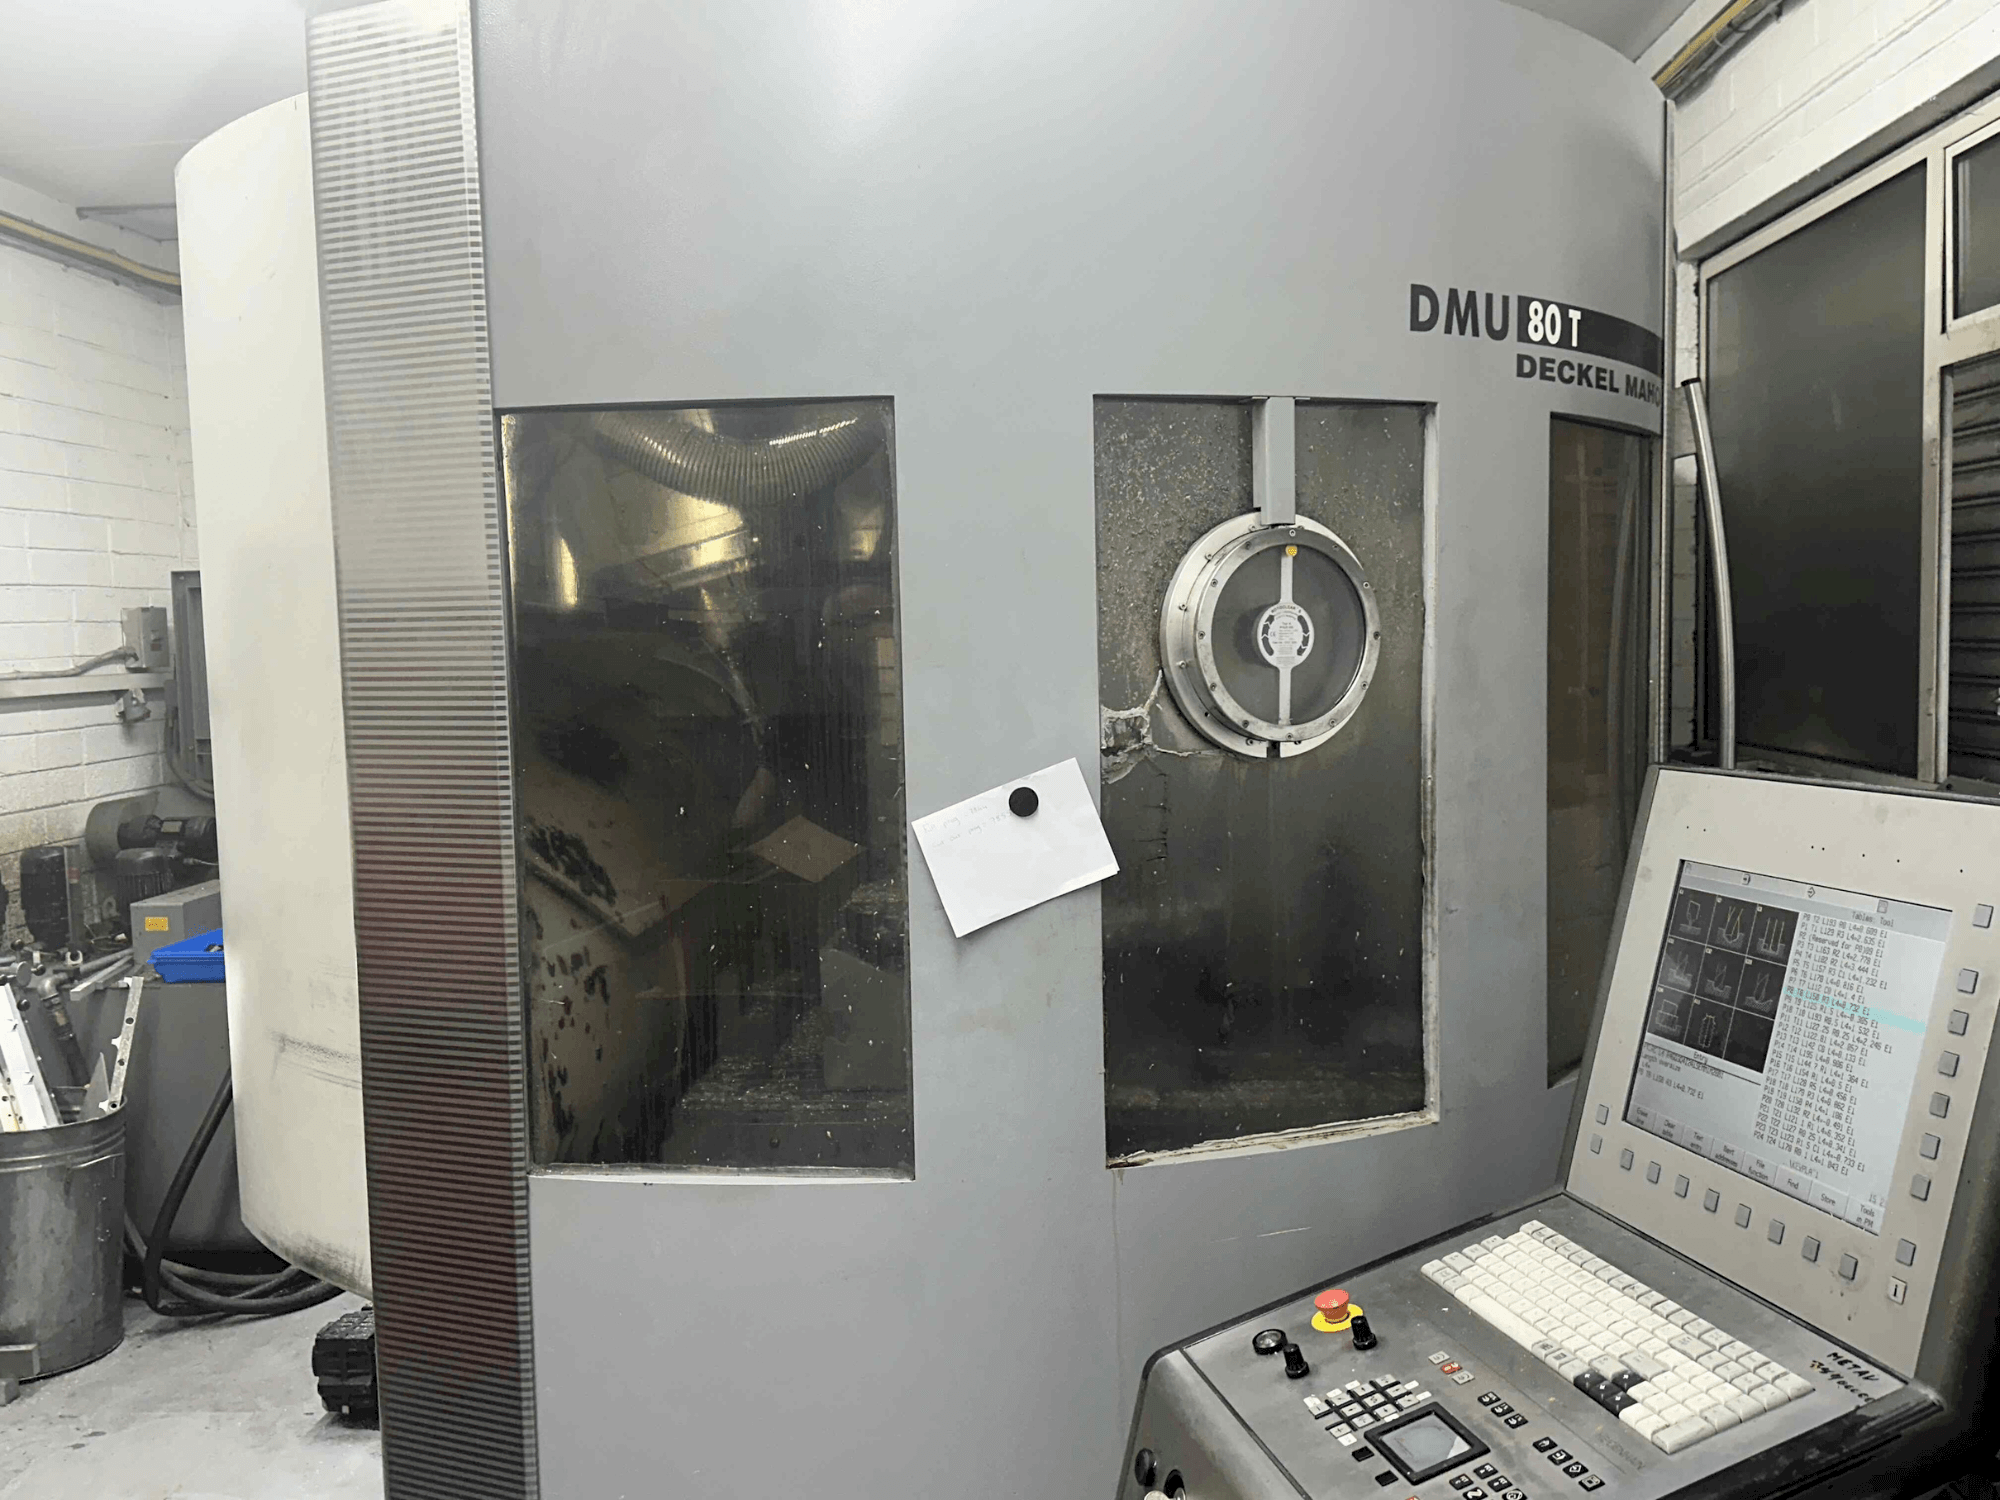 Widok z przodu maszyny DECKEL MAHO DMU 80T (2002)